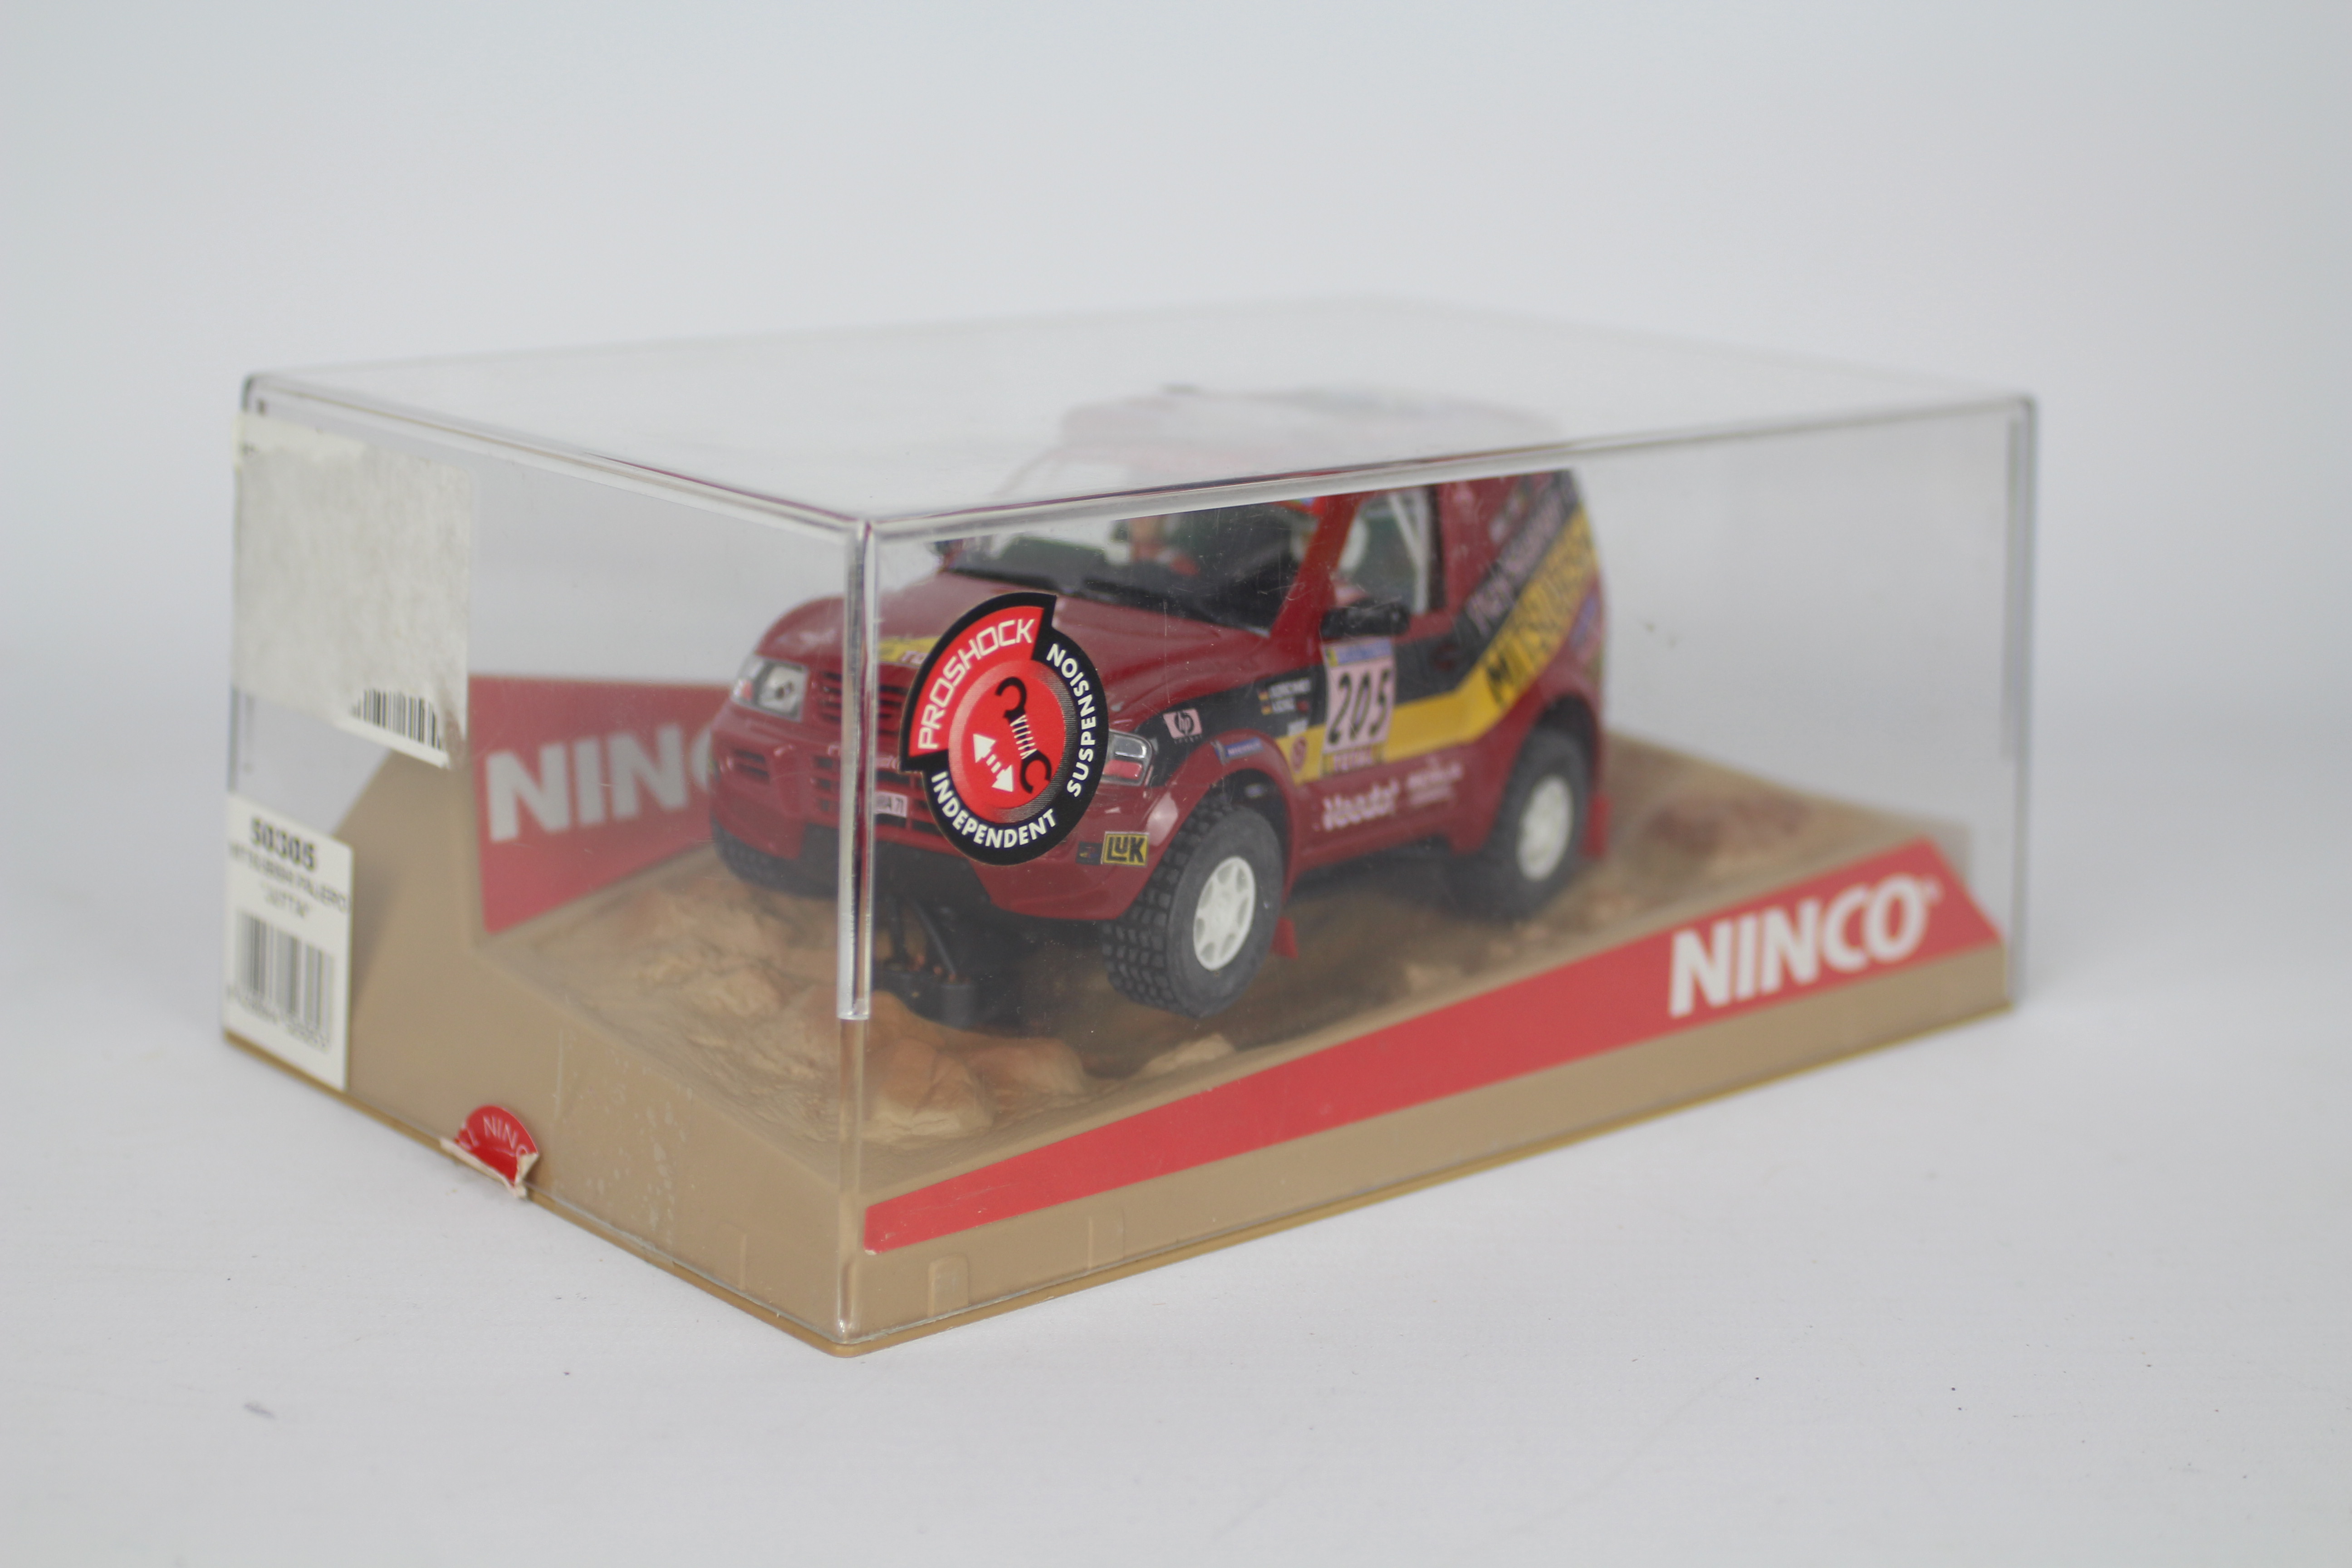 Ninco - A boxed Mitsubishi Pajero Rally # 50305. - Image 2 of 3